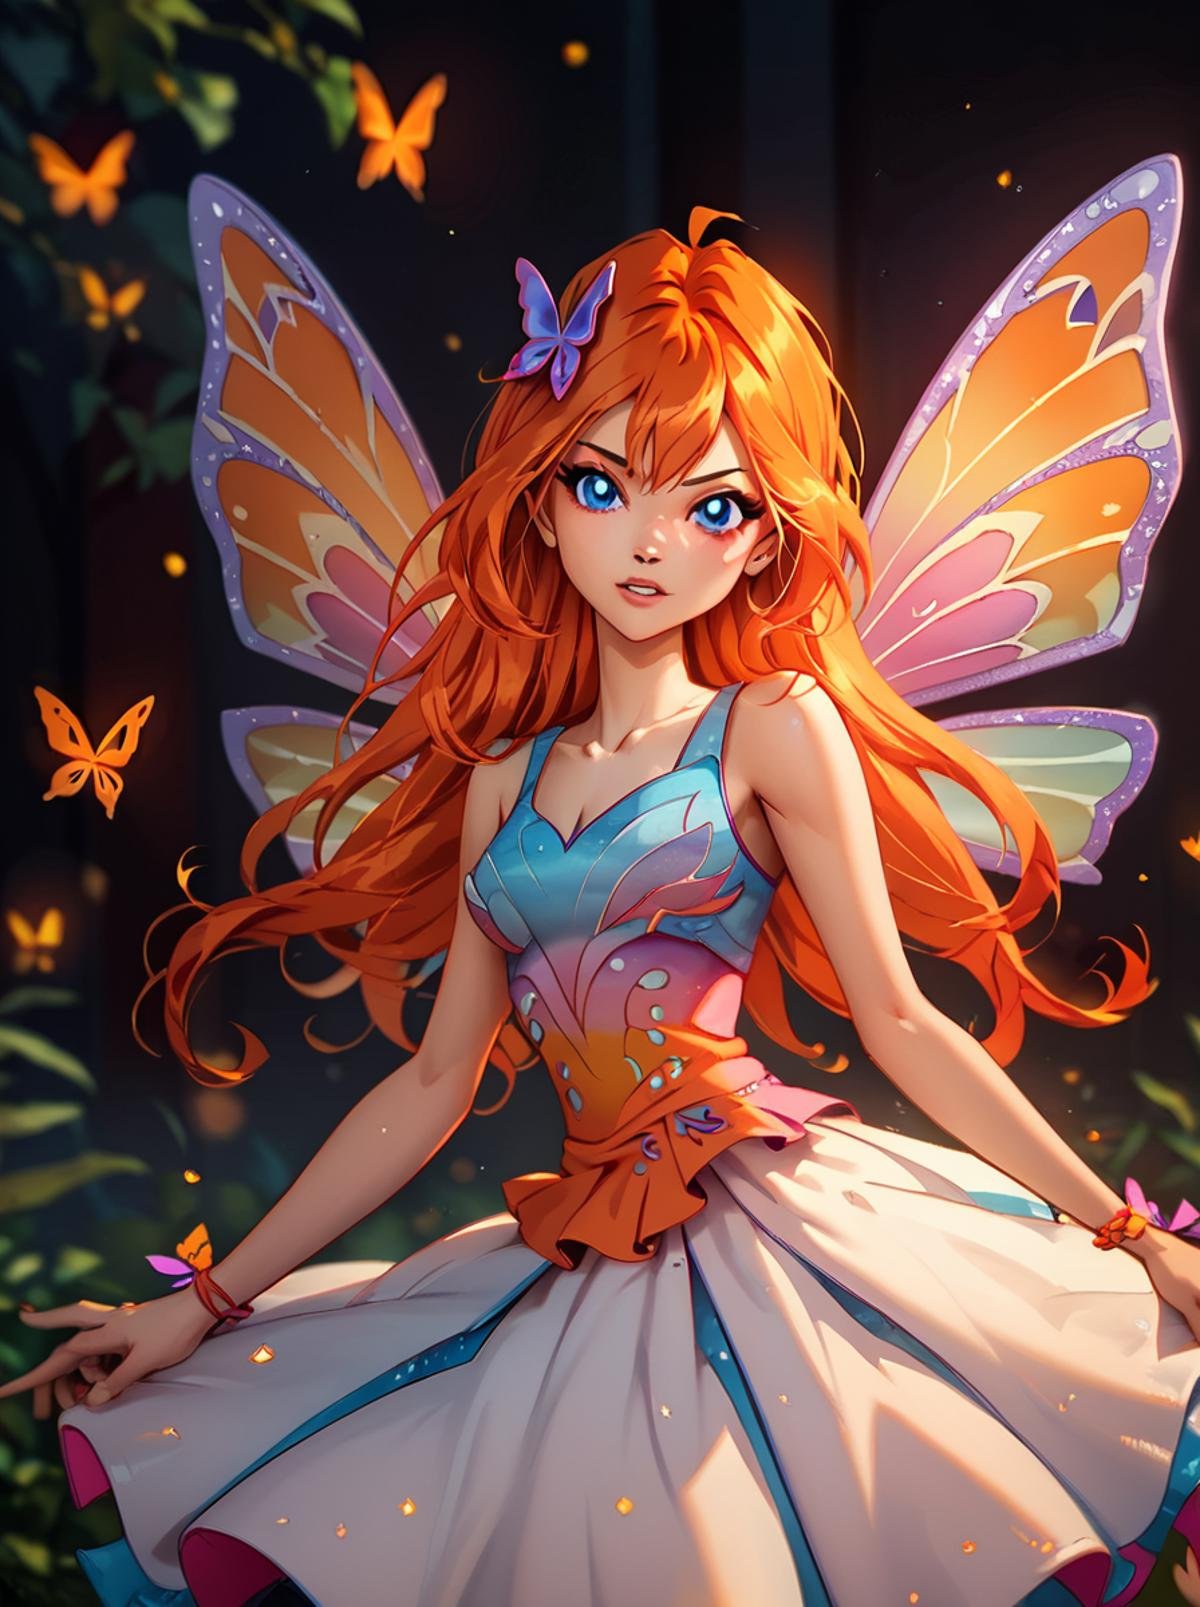 score_9, score_8_up, score_7_up, <lora:WinxAndTrixPony:0.8>,winxtrix,,bloom, butterfly wings, wings, long hair, 1girl, solo, dress, orange hair, fairy, blue eyes, hair ornament